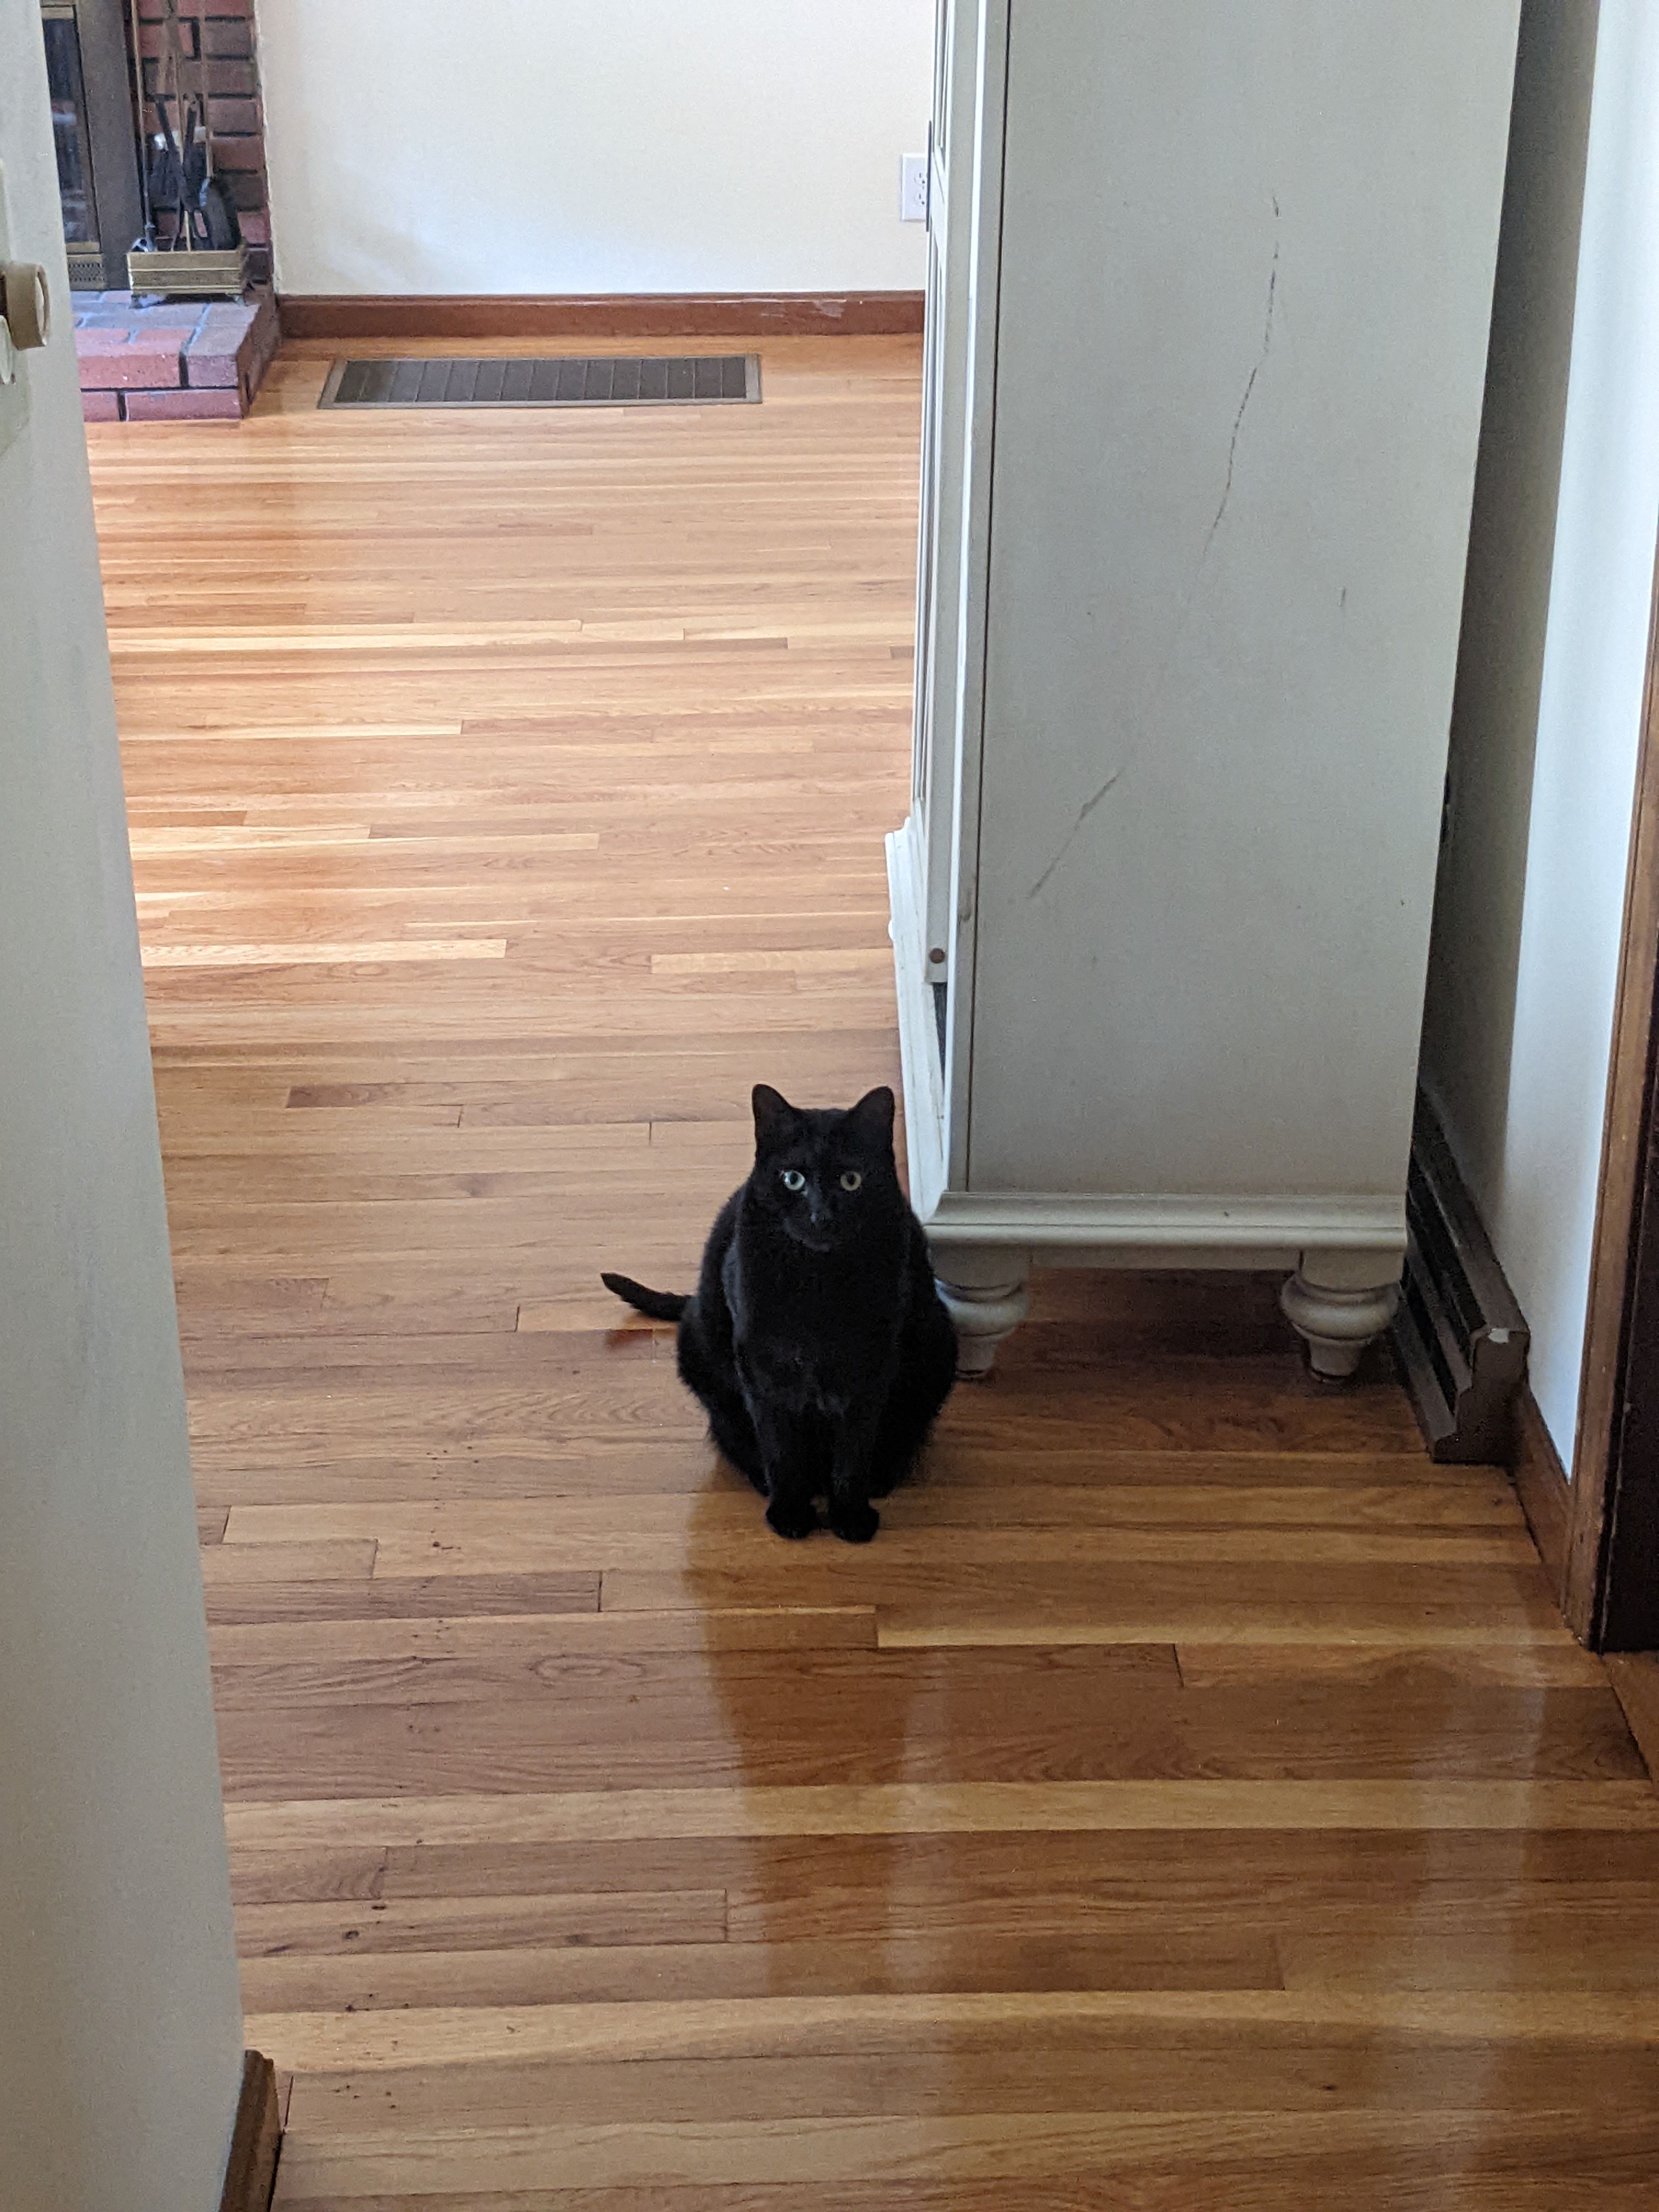 A black cat sitting in a hallway taken on a Pixel 4a 5G